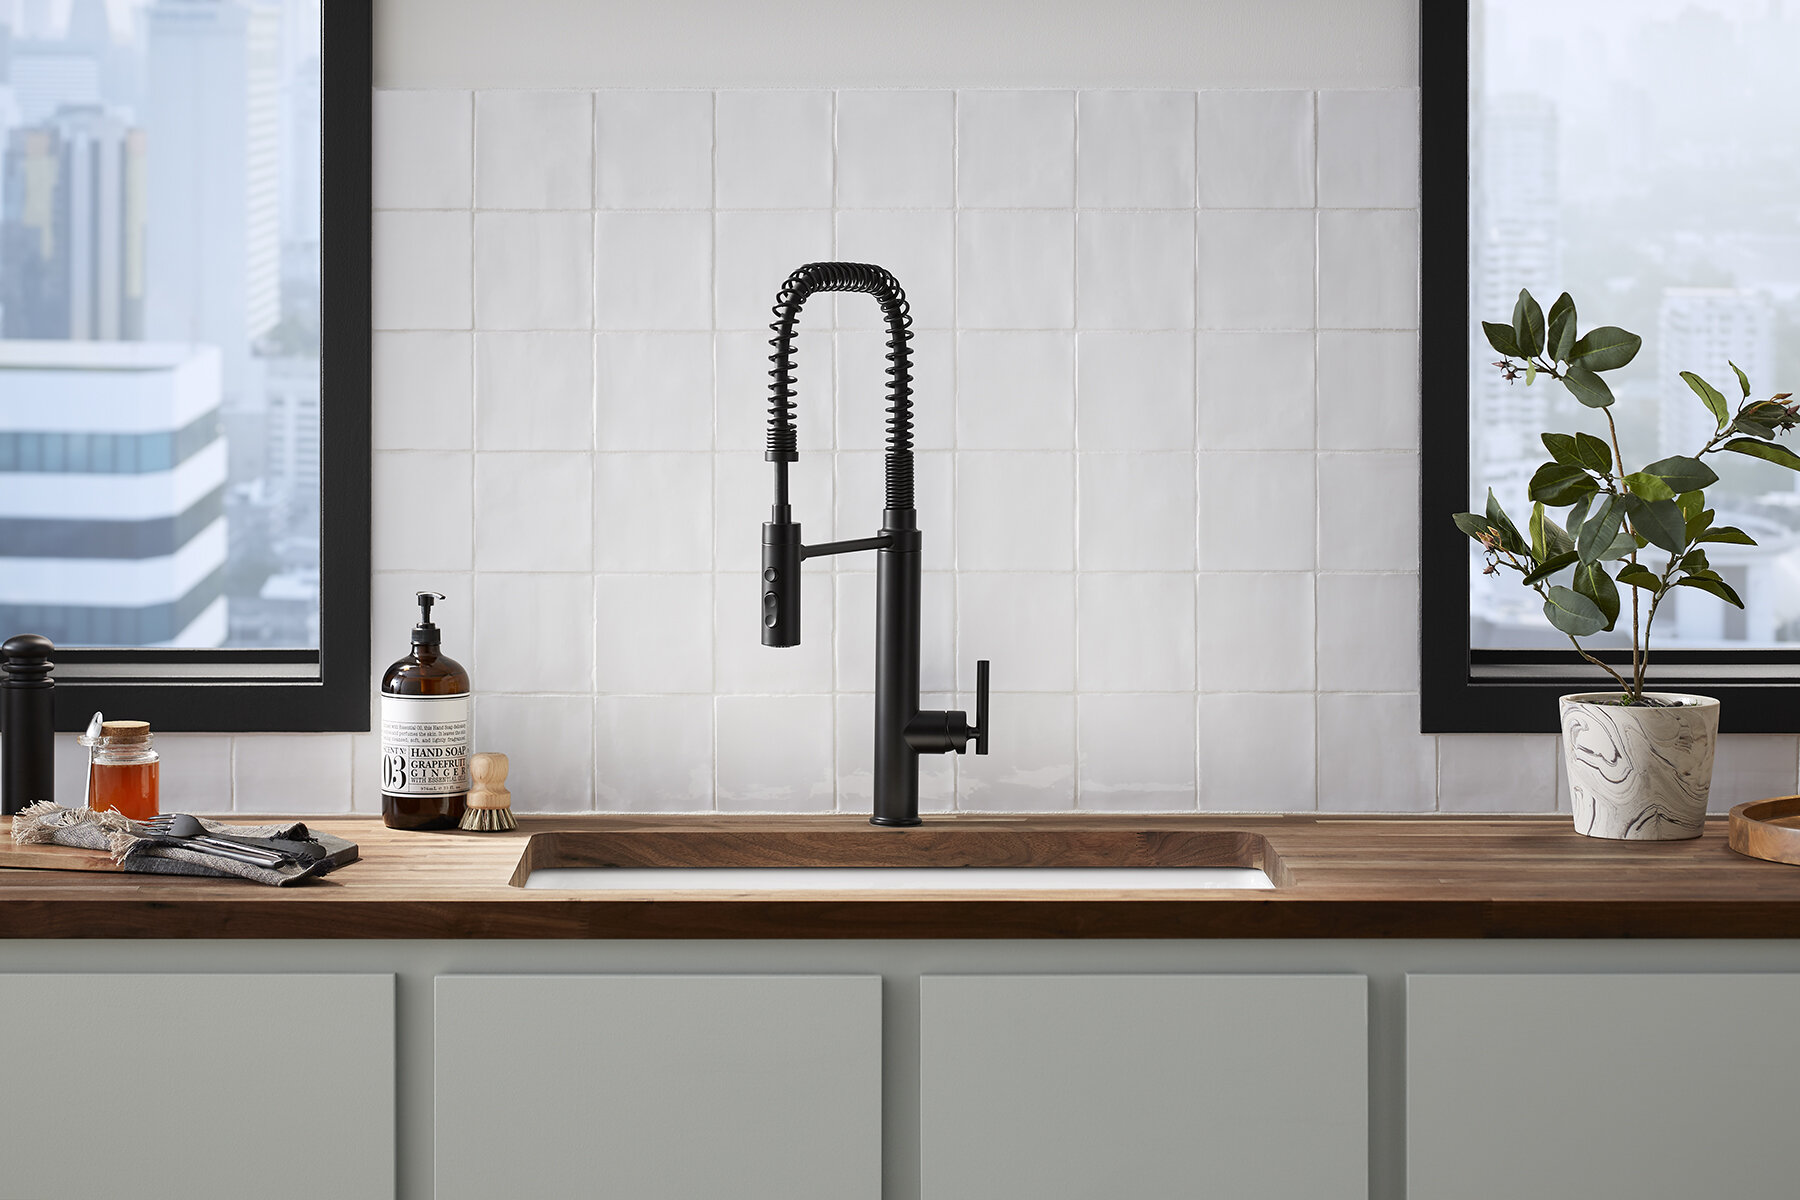 Purist Semiprofessional Kitchen Sink Faucet Reviews Joss Main